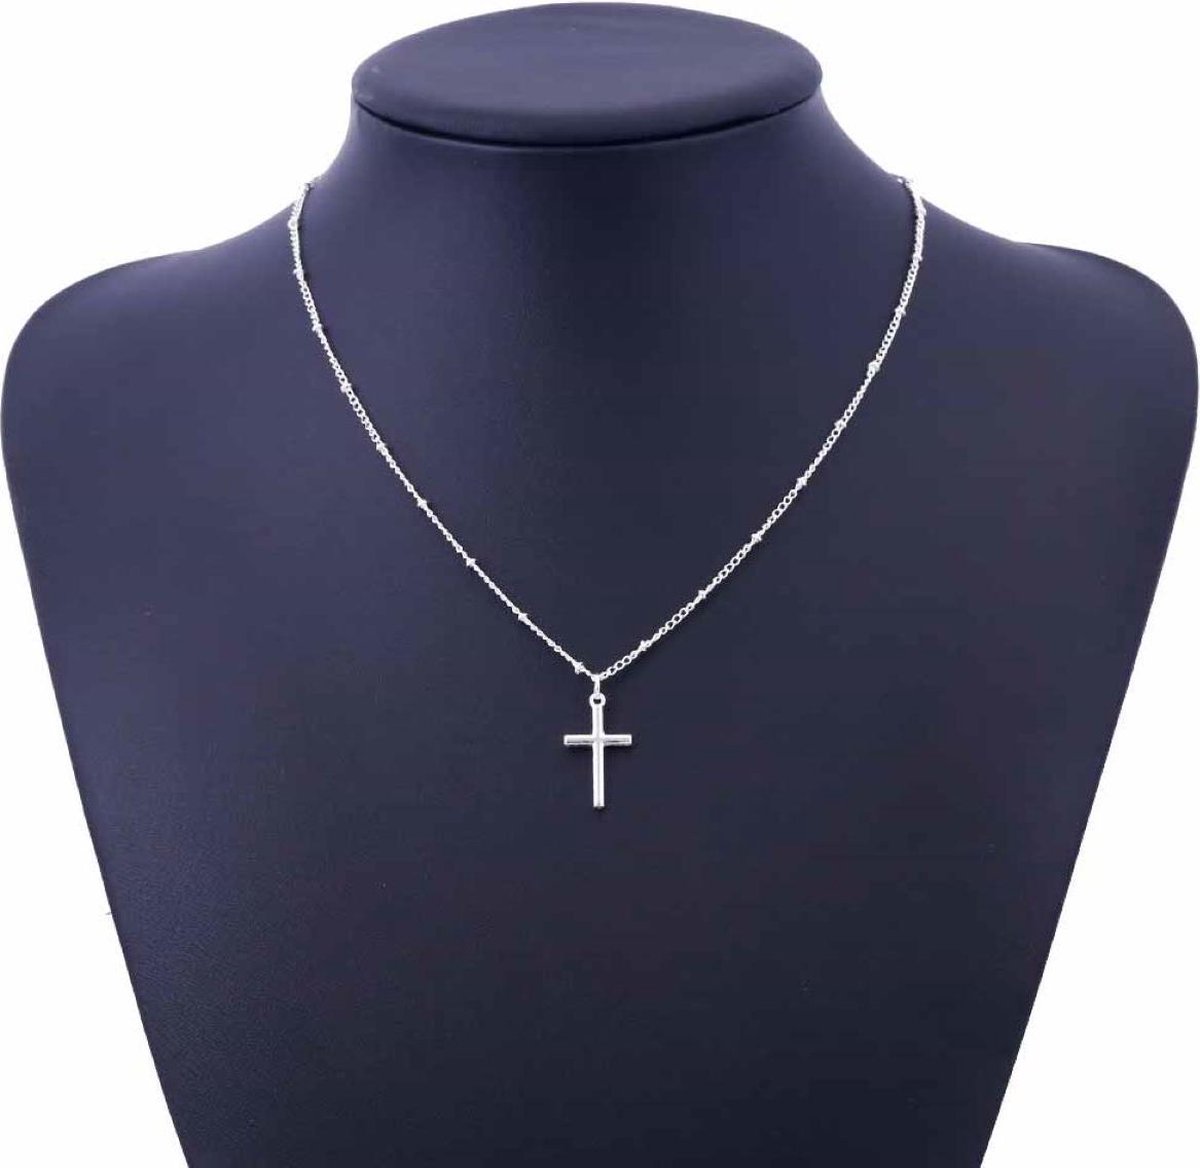 Ketting met kruisje zilverkleur - Van Santen Fashion Charm Jewelry